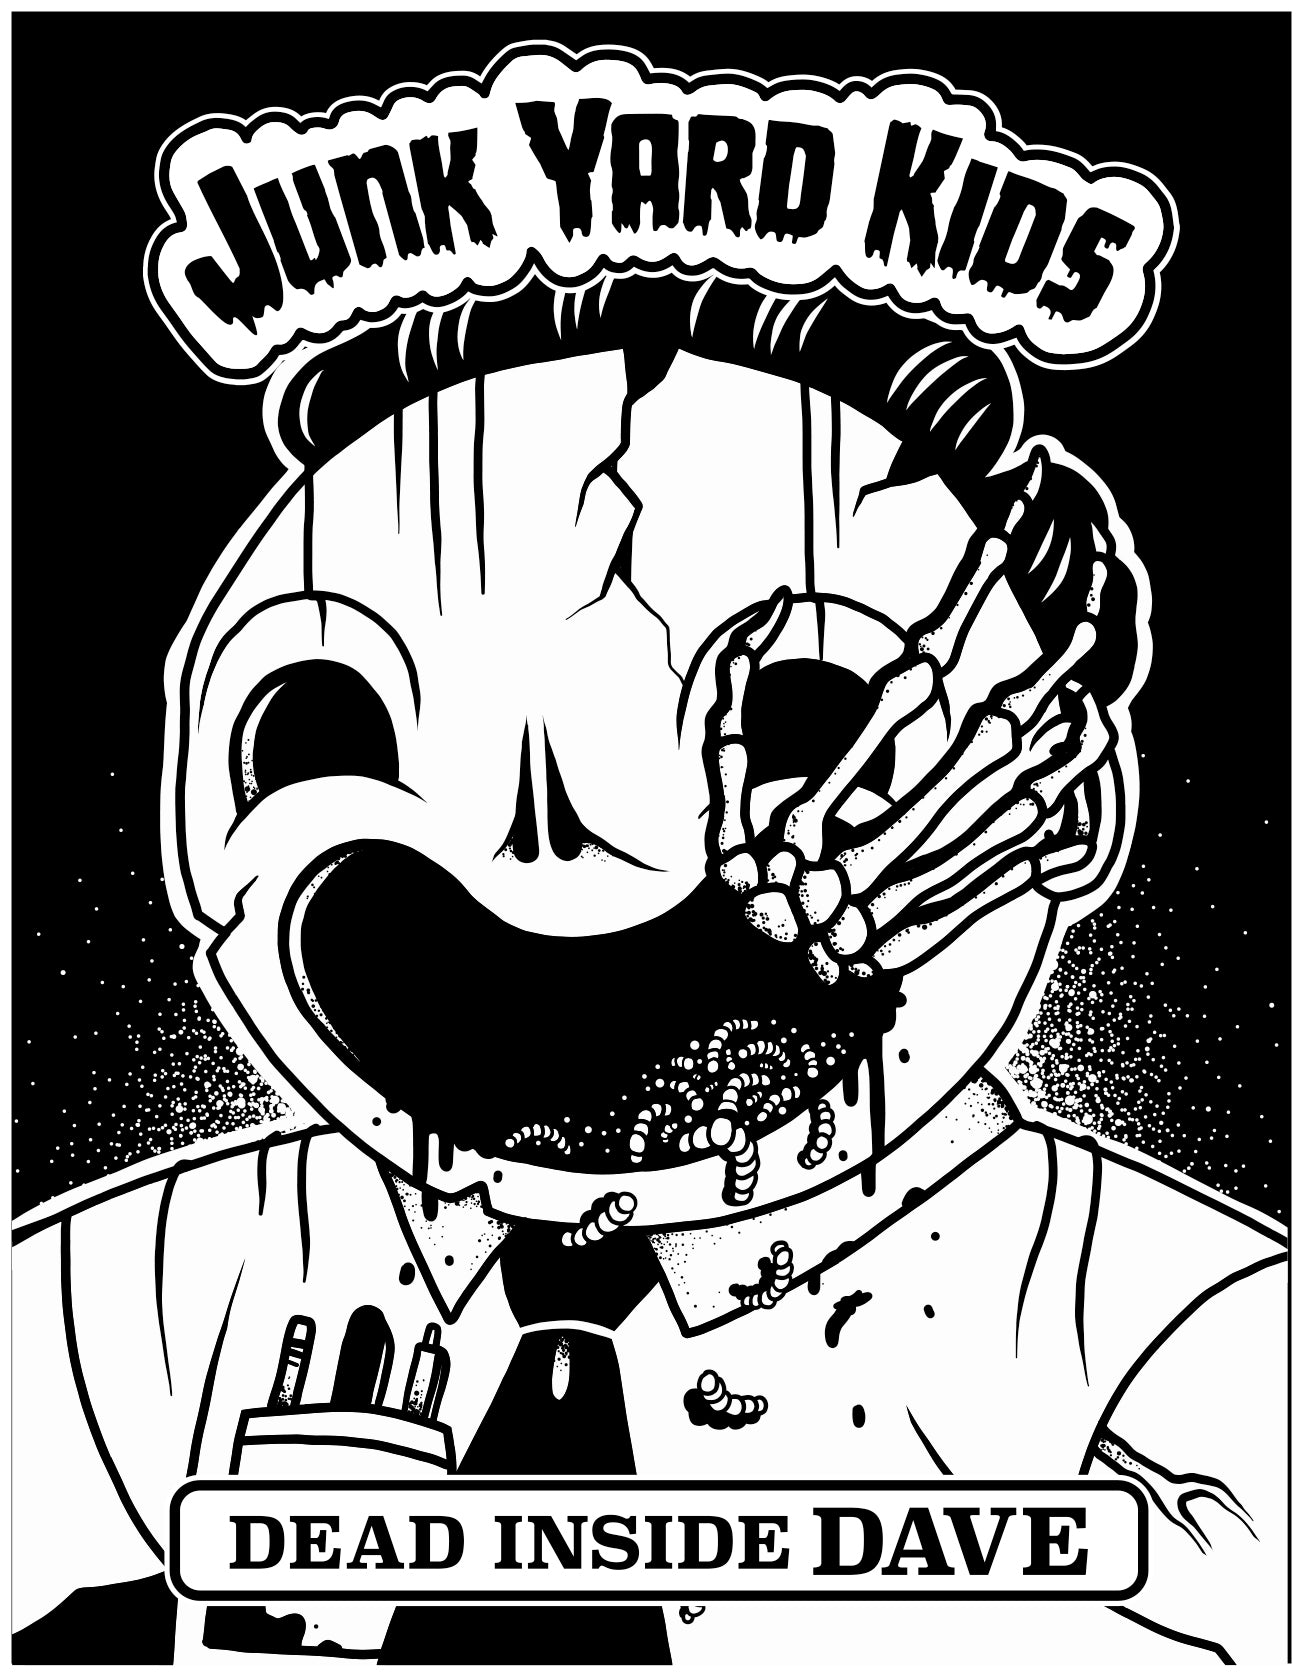 "Dead Inside Dave" by Junk Yard